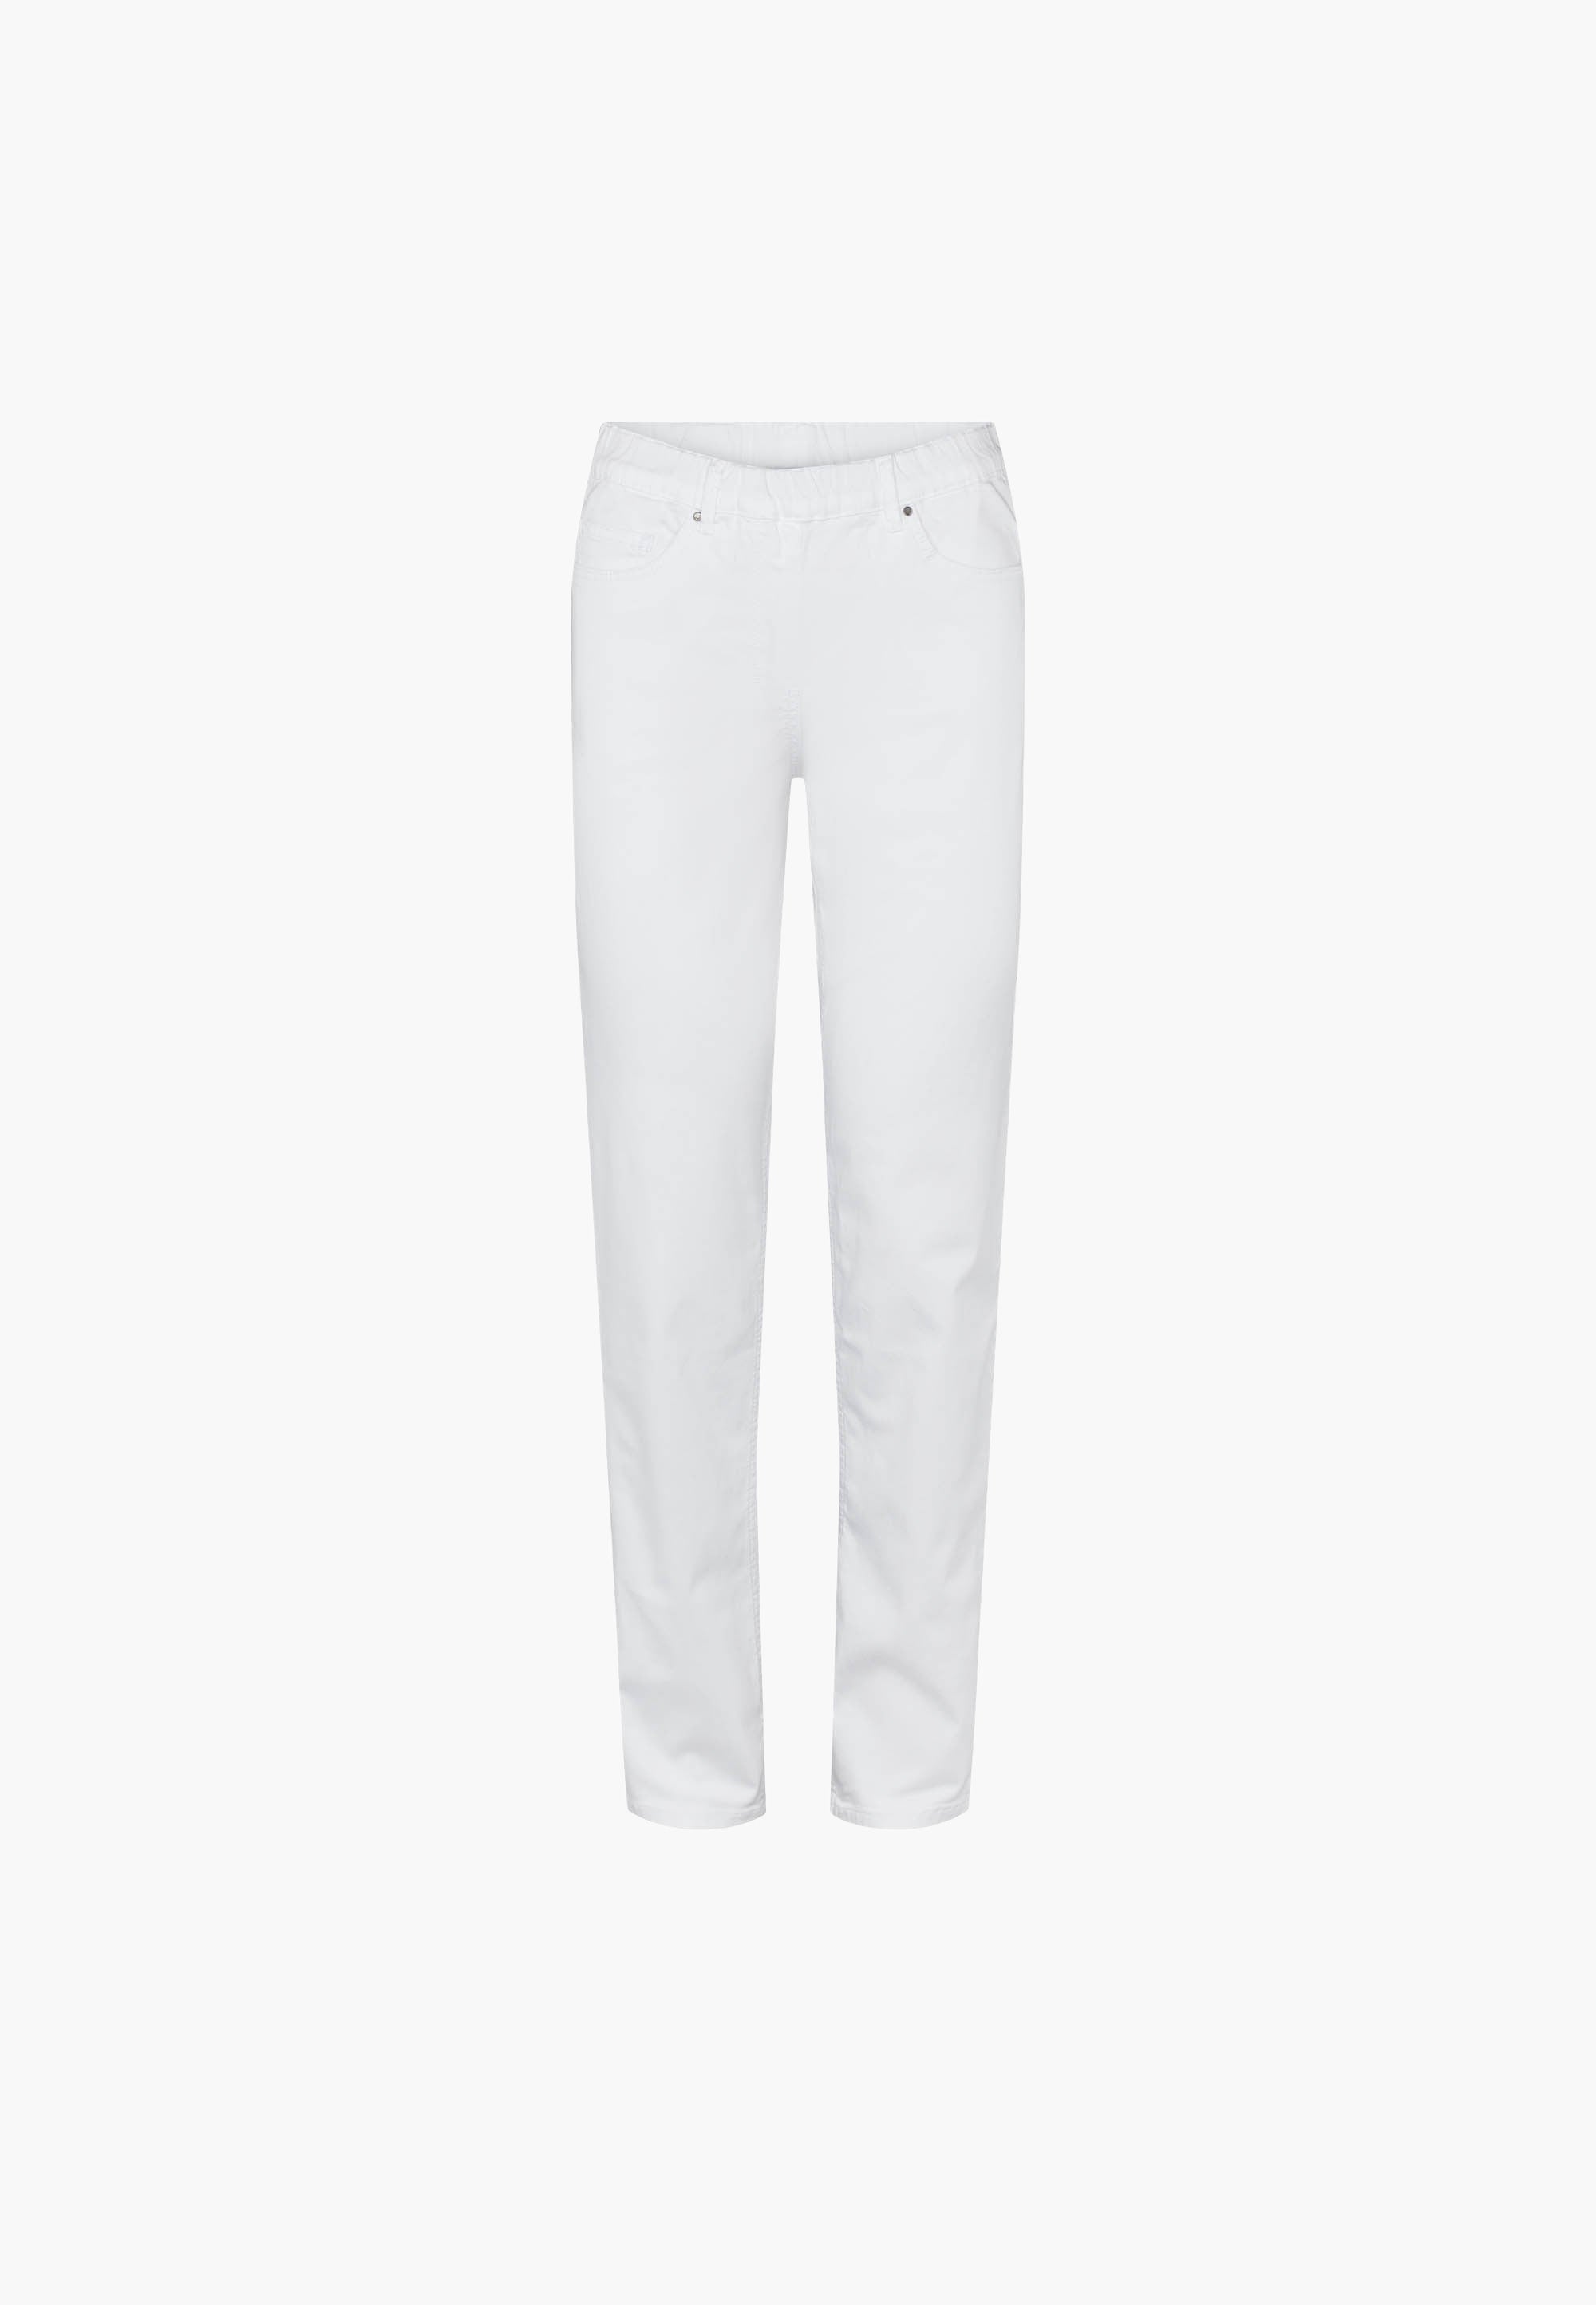 LAURIE  Hannah Regular - Medium Length Trousers REGULAR 10122 White